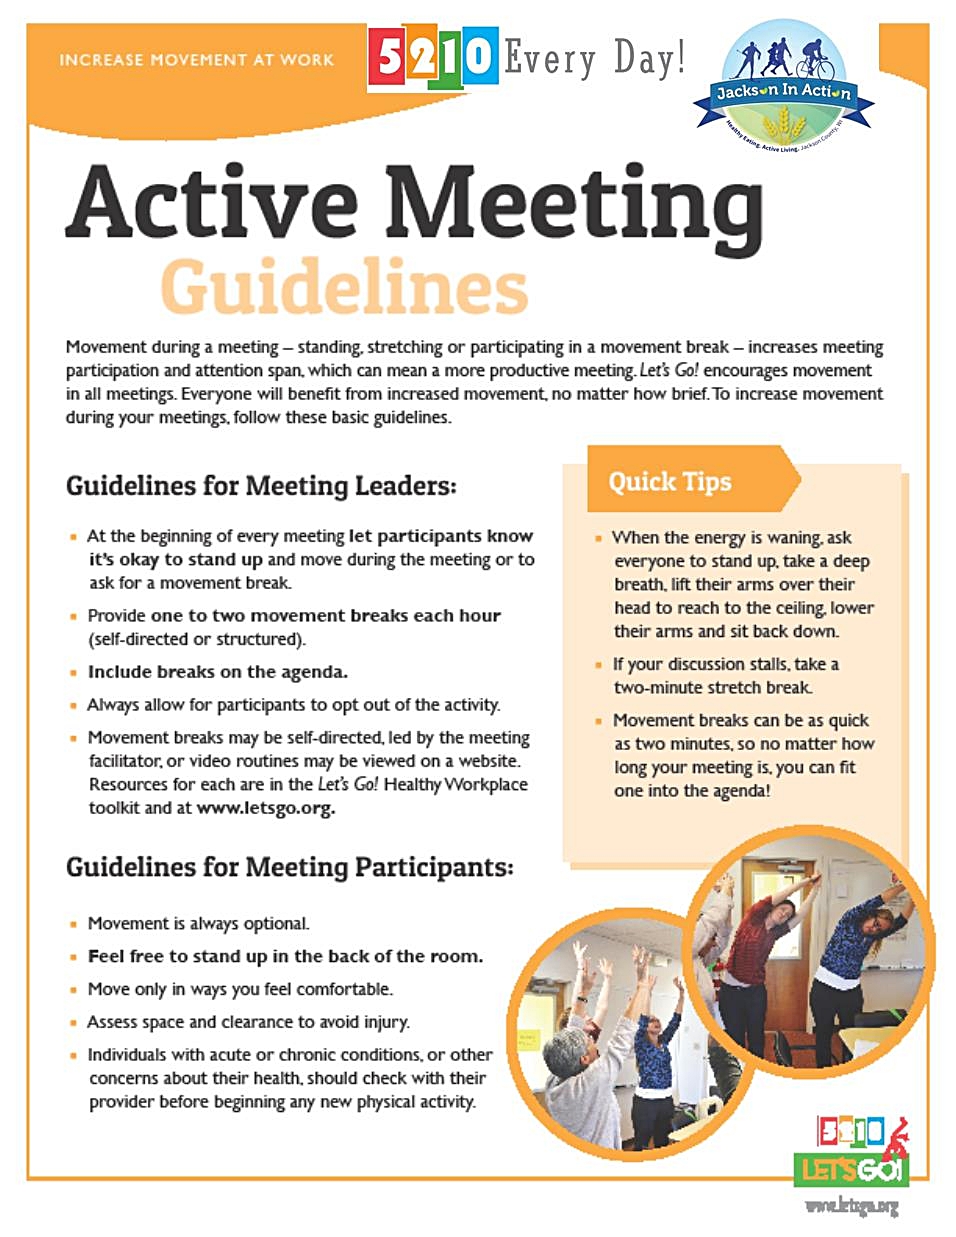 Active Meeting Guidelines.jpg